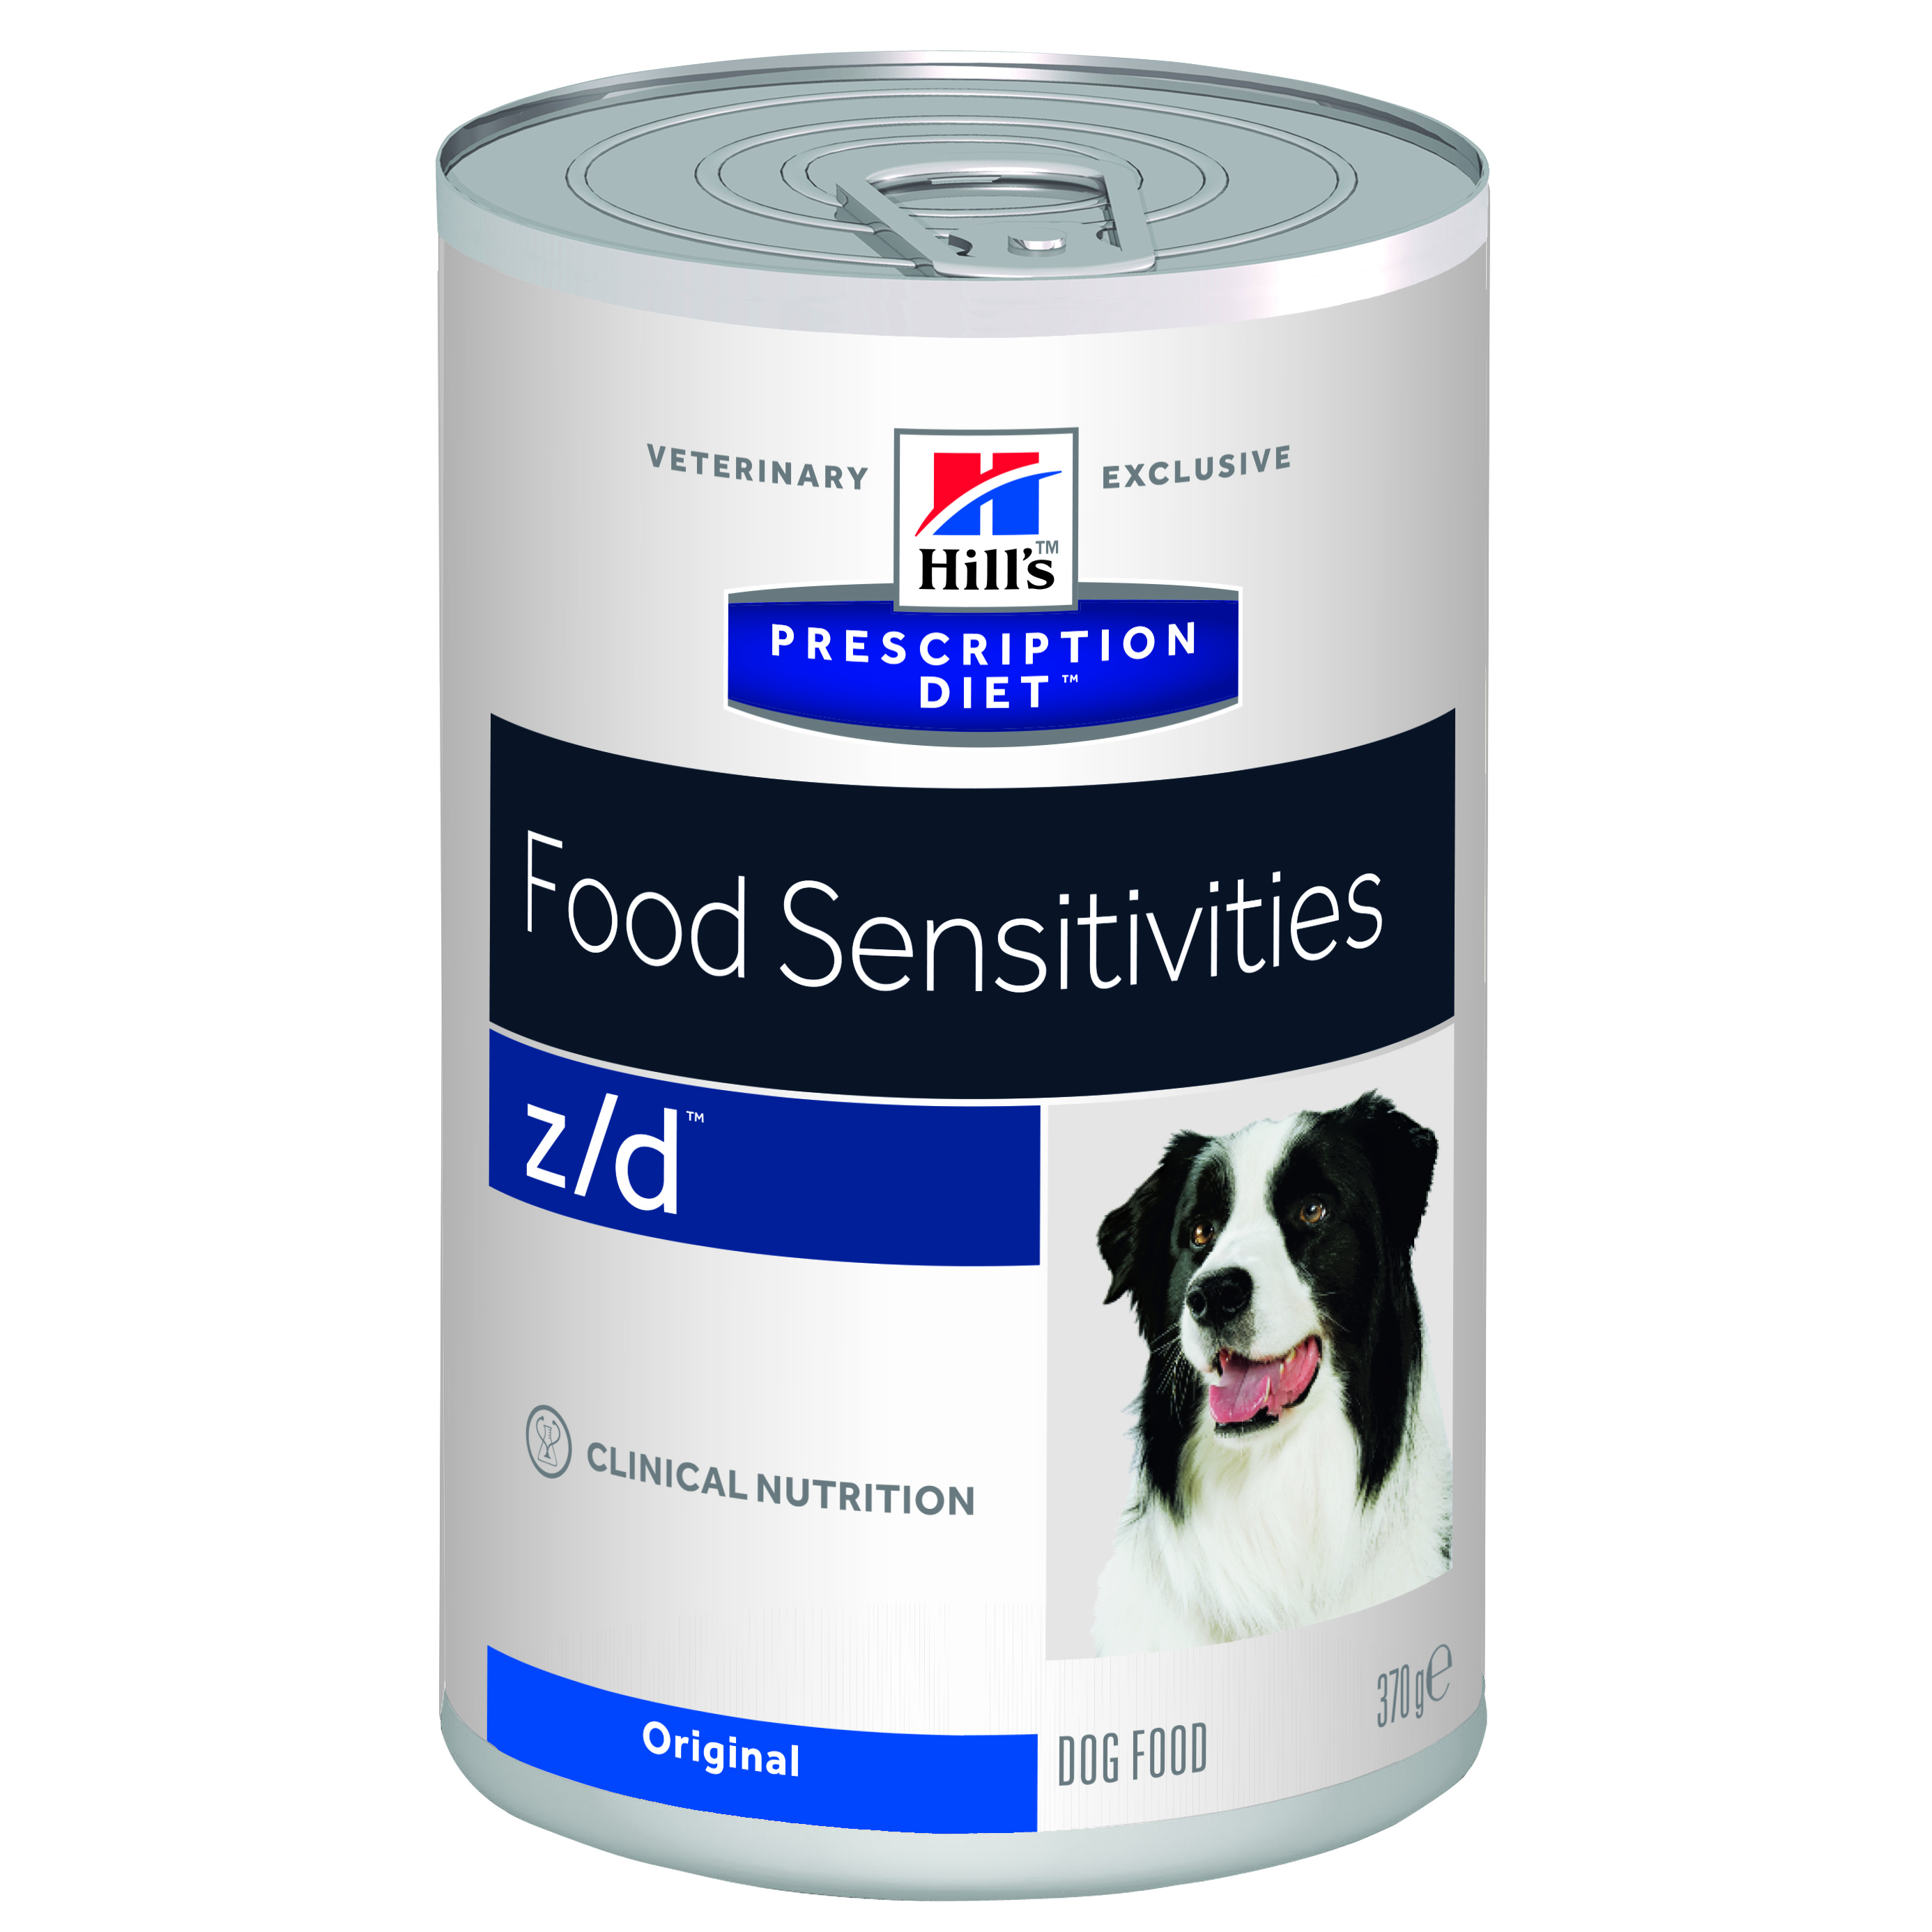 Hill's Prescription Diet Food Sensitives z/d 12x370g Hühnerleber